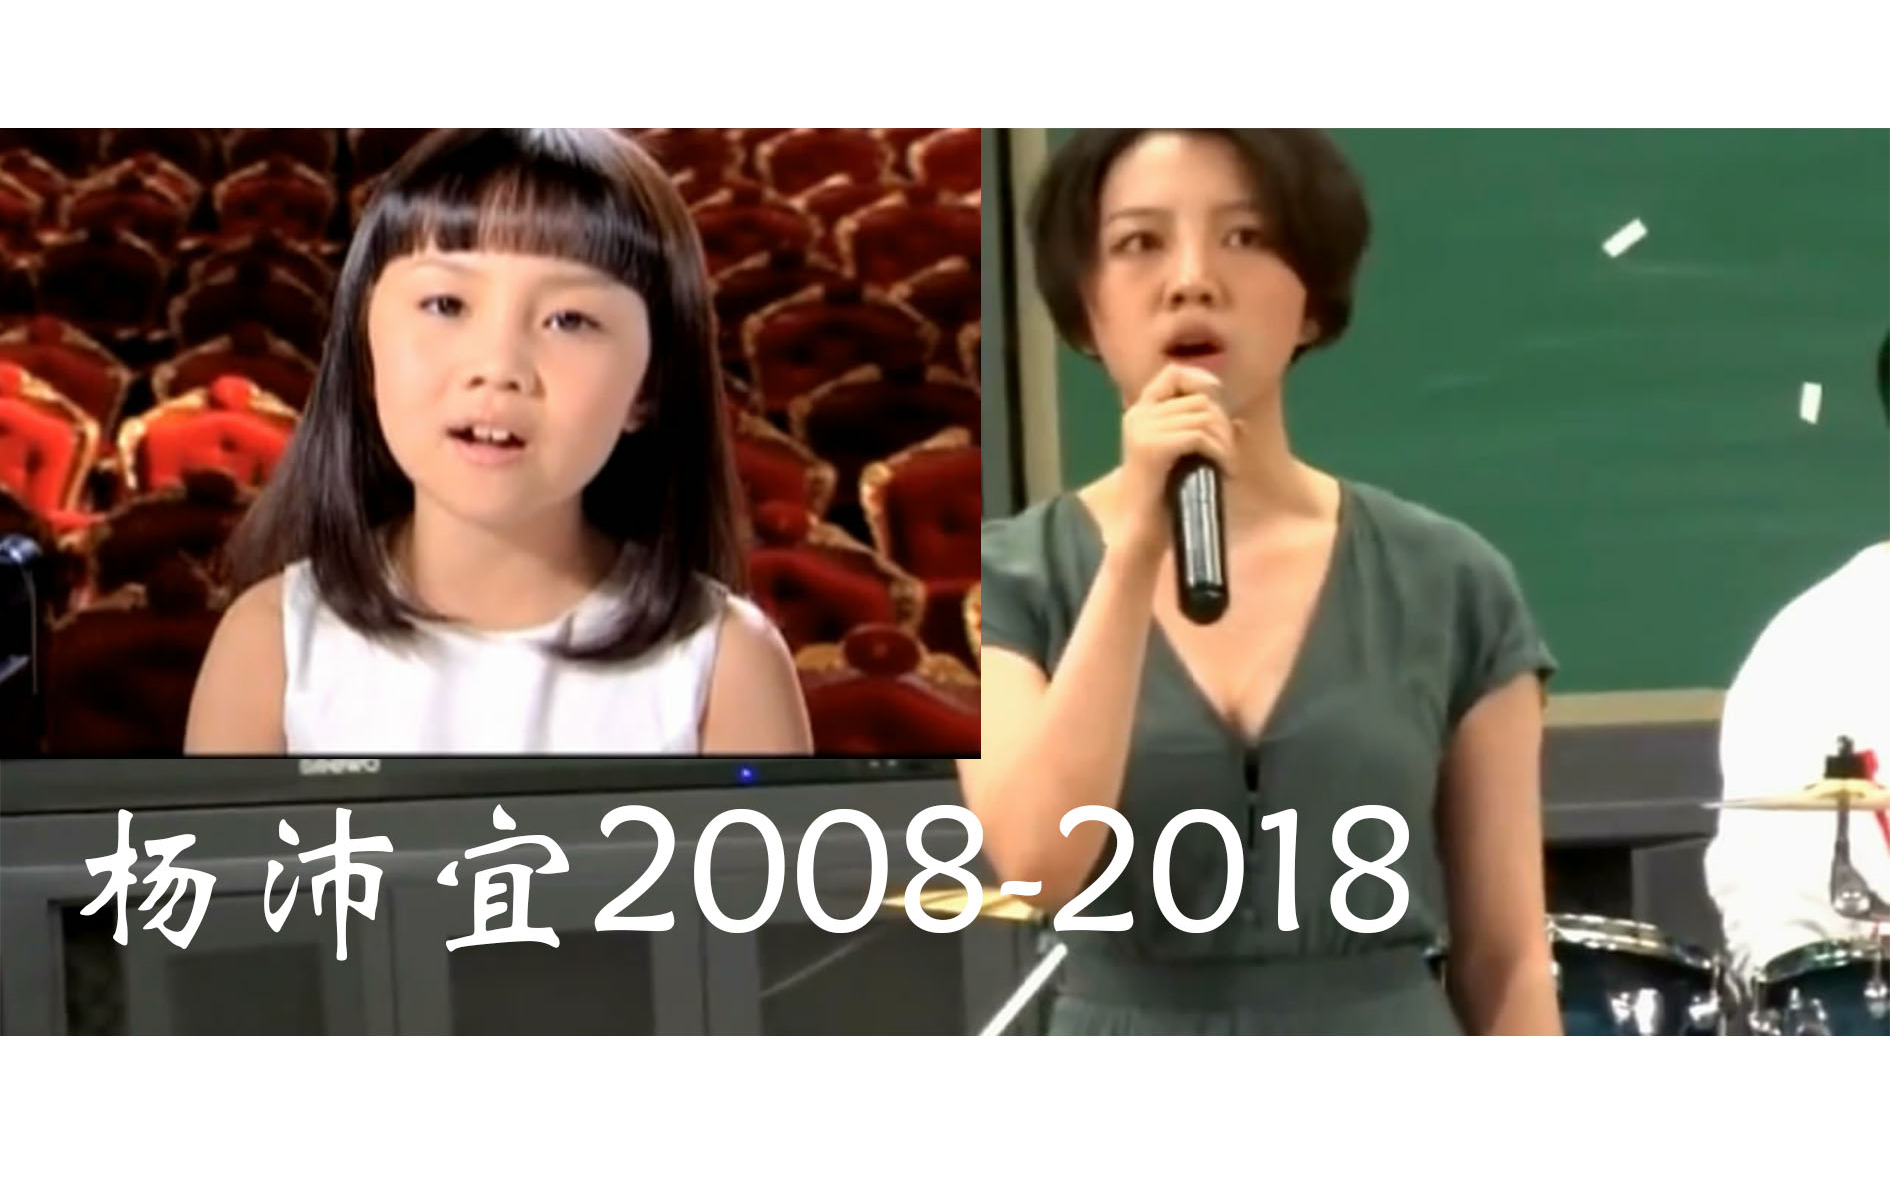 2008北京奥运唱着歌唱祖国的杨沛宜如今长成翩翩少女了